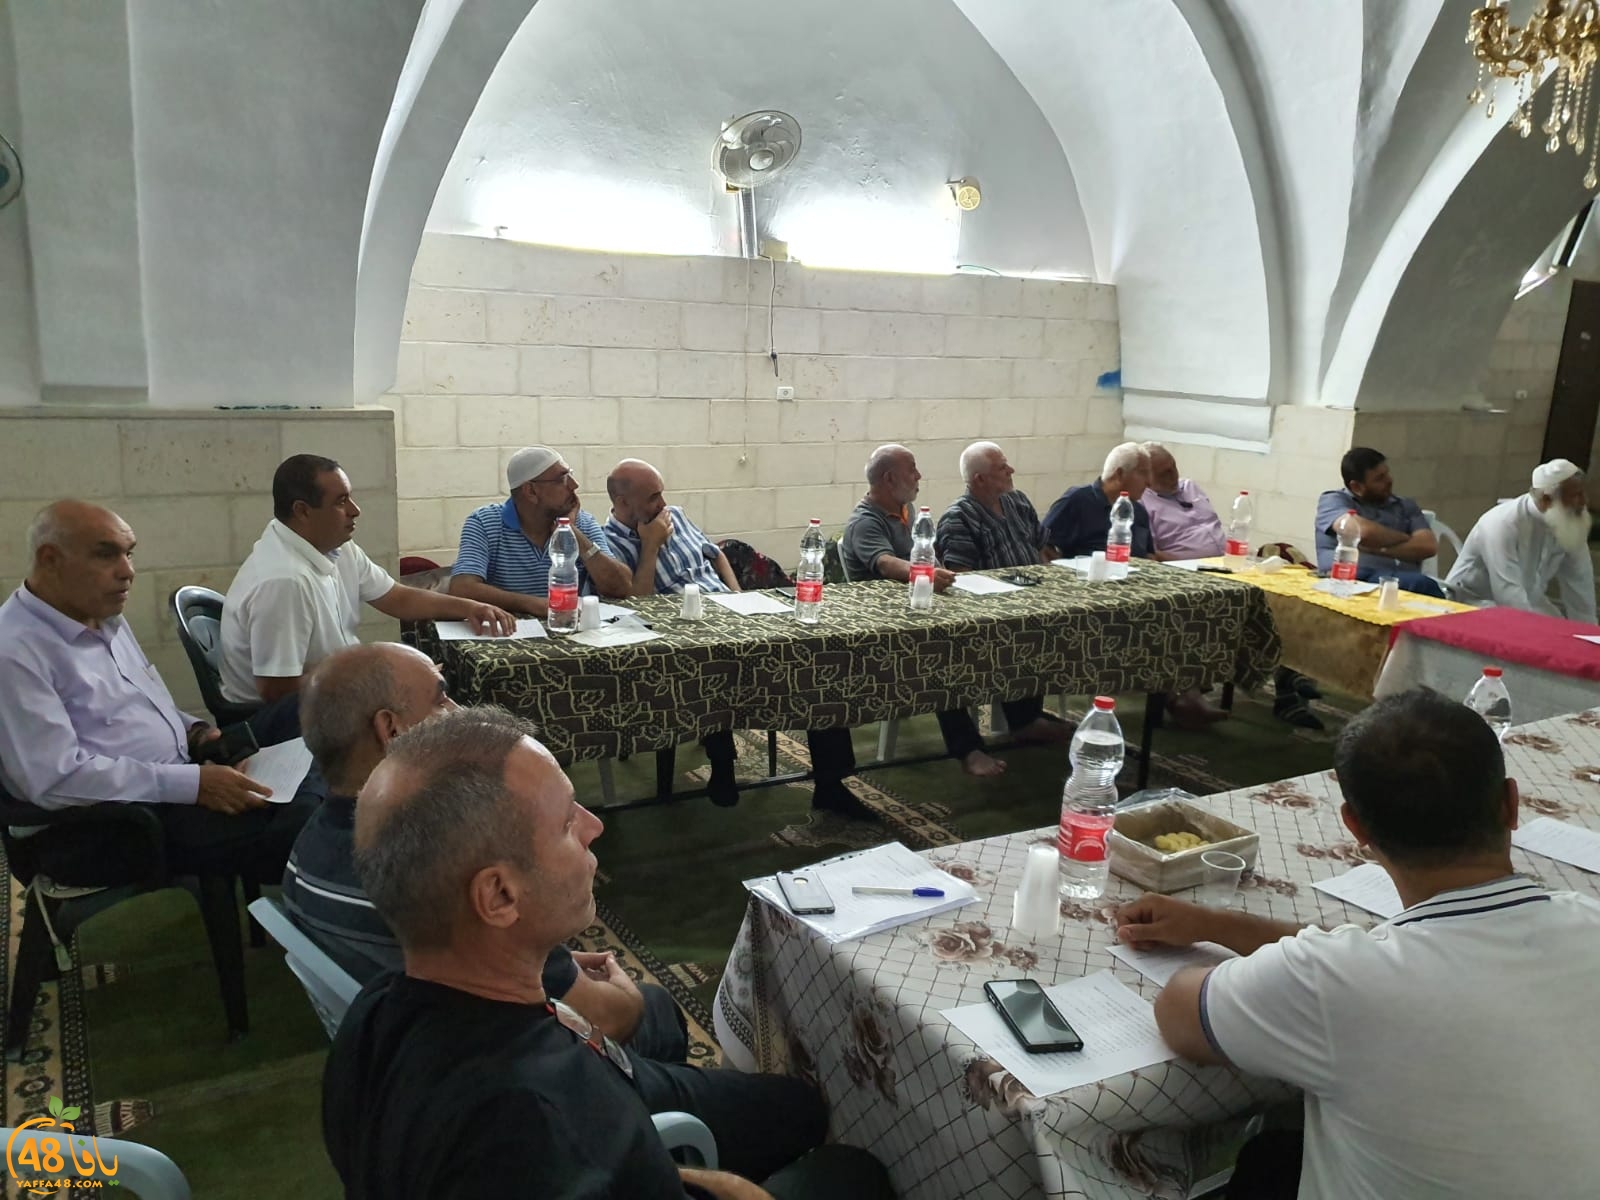 بالصور: اجتماع ومحاضرة في اللد تمهيداً لاطلاق معسكر للحفاظ على المقدسات